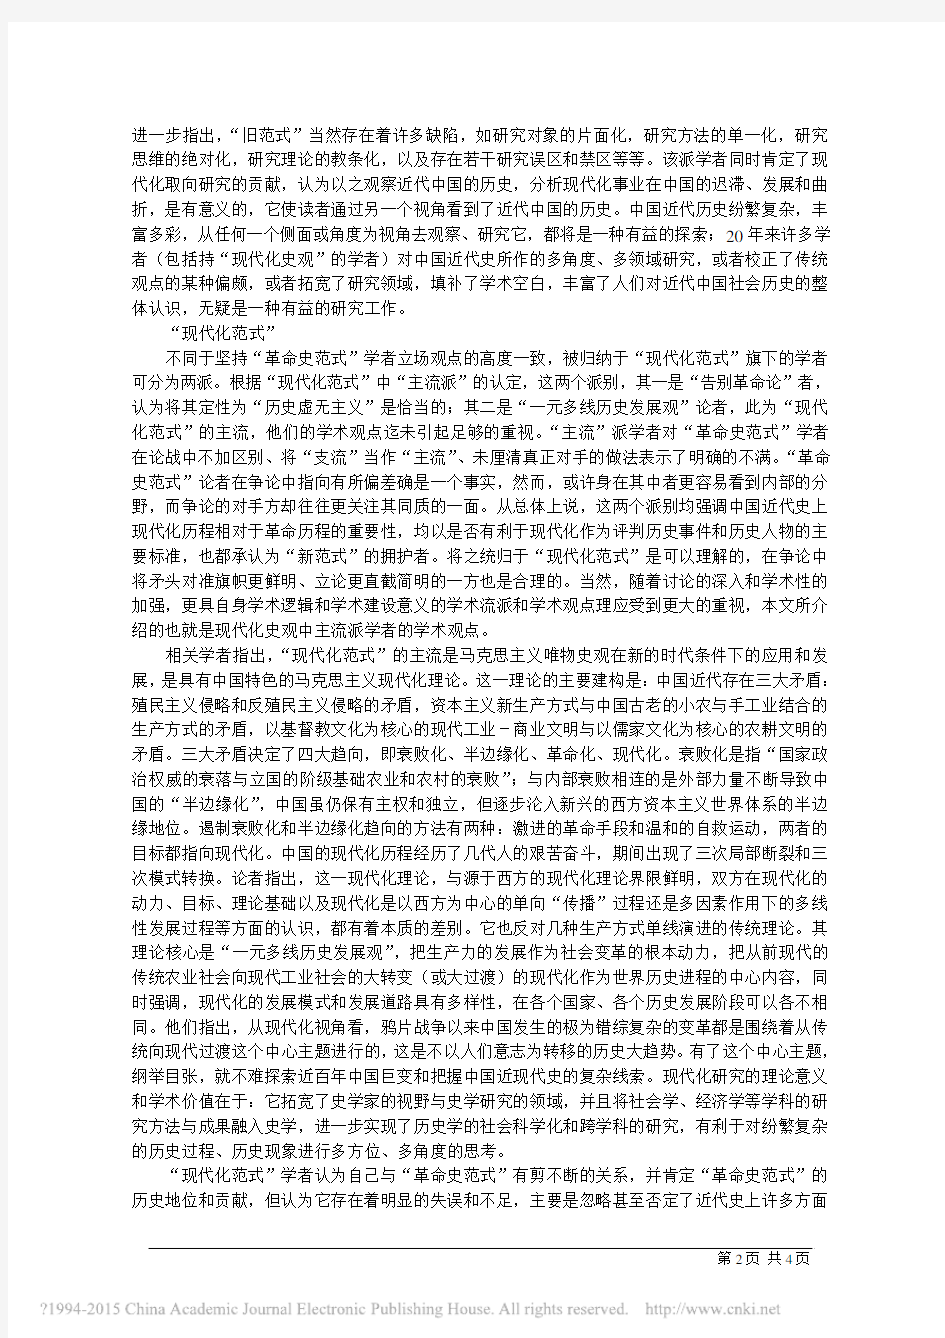 中国近代史研究中的_革命史范式_与_现代化范式_徐秀丽